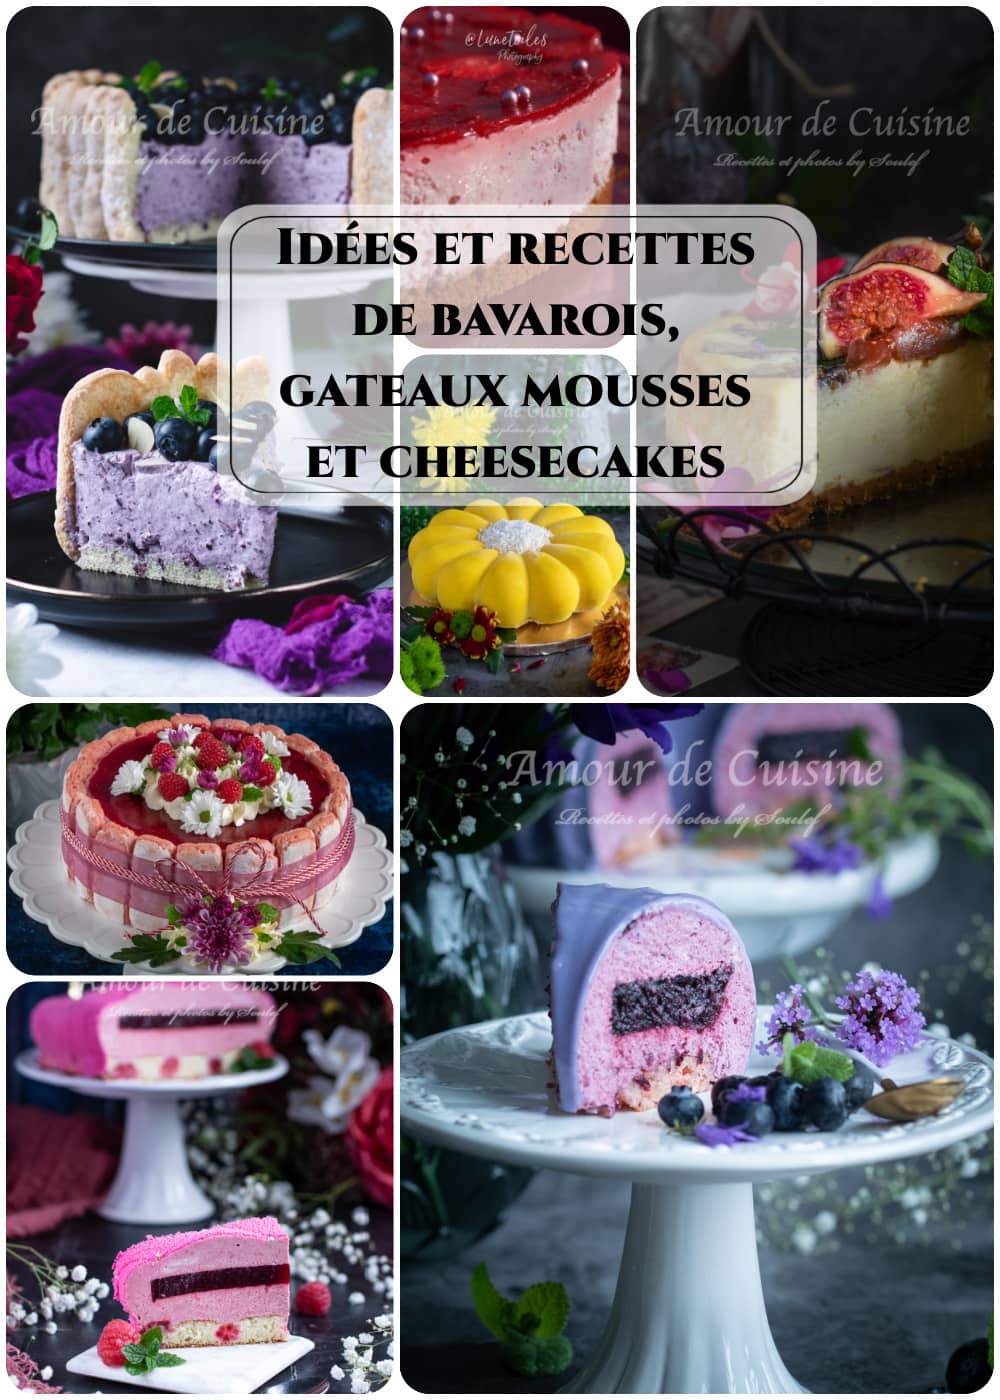 Idées et recettes de bavarois, gateaux mousses et cheesecakes